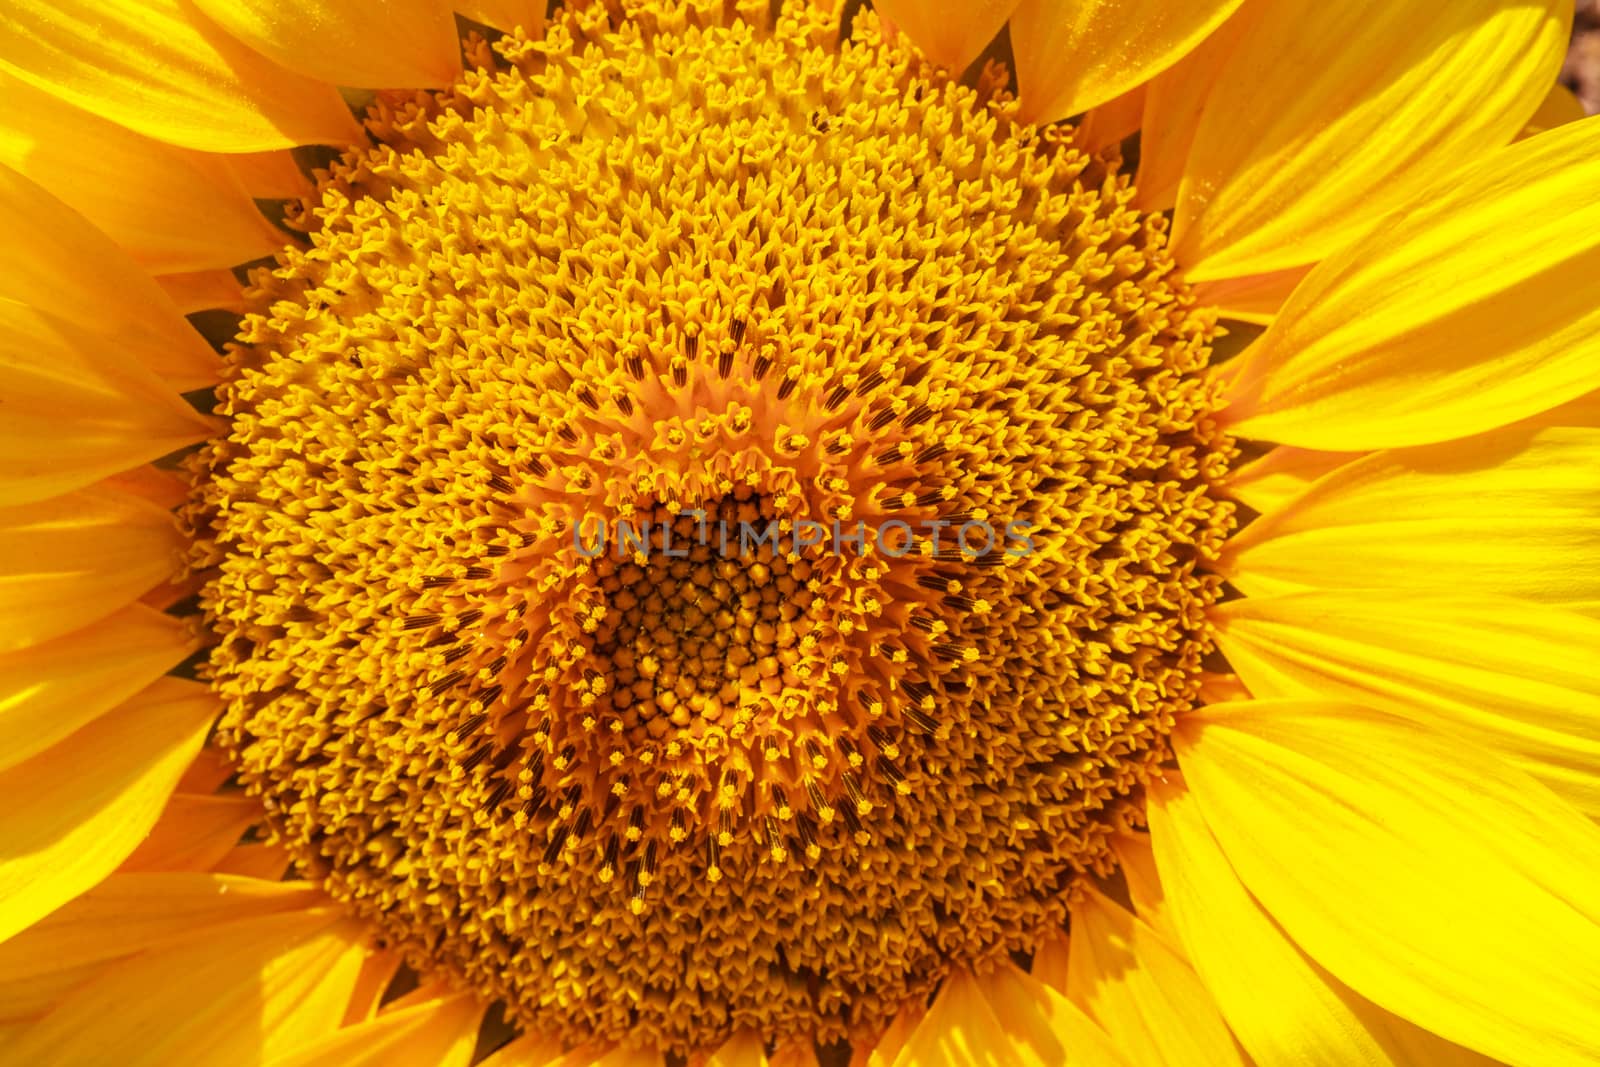 Flower of sunflower by fogen